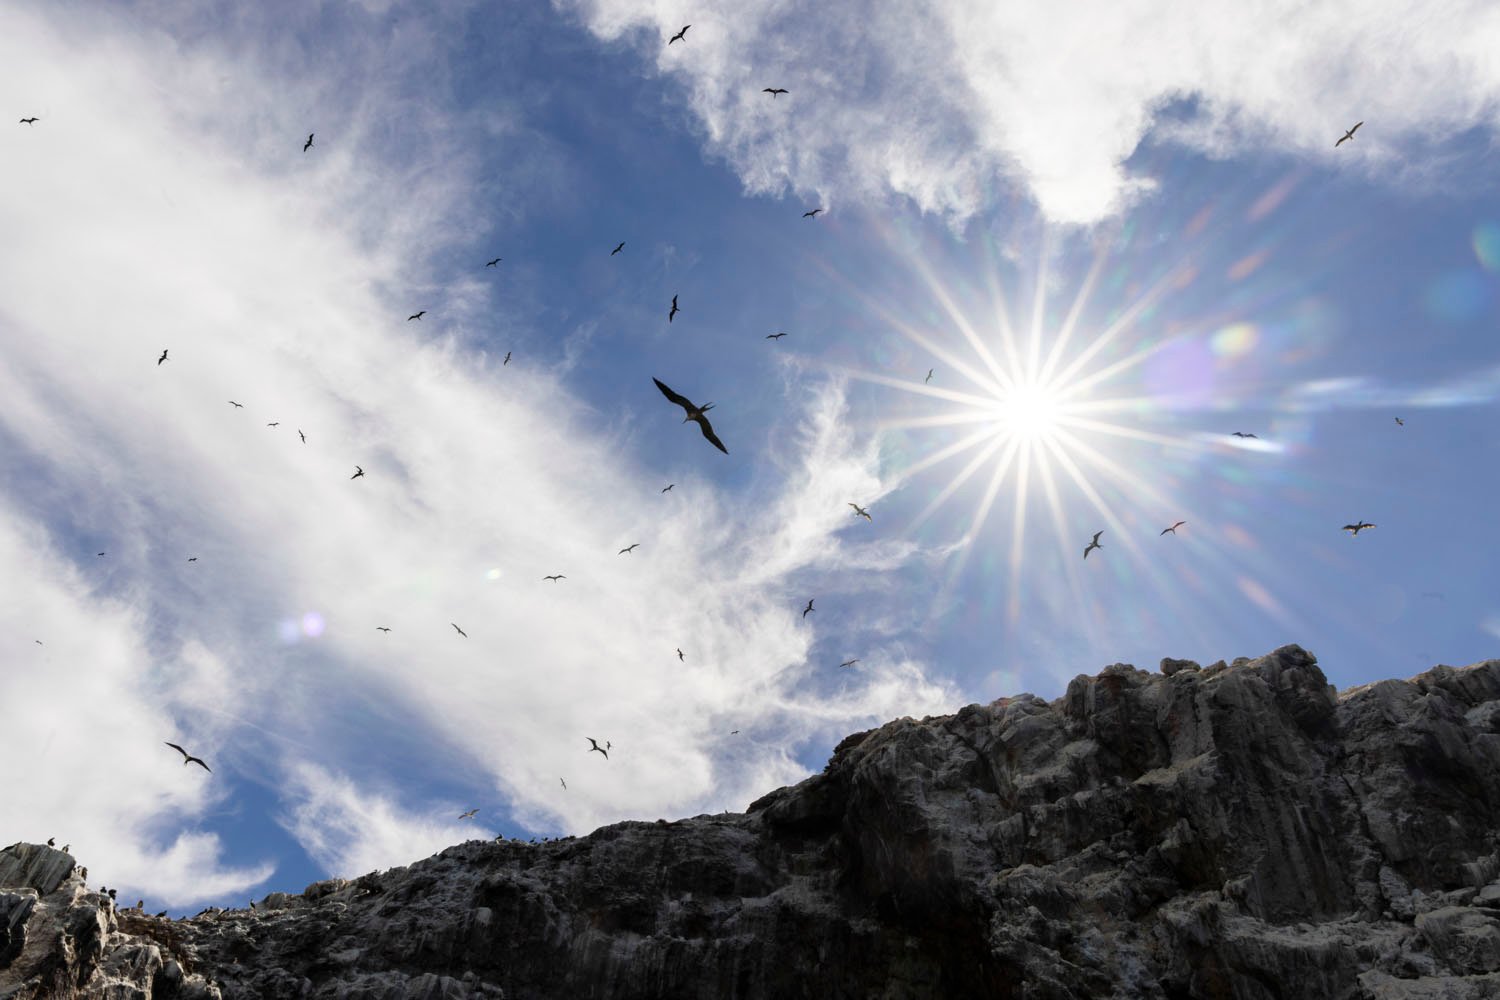 Los pájaros vuelan sobre los acantilados rocosos bajo un sol deslumbrante y un cielo parcialmente nublado.